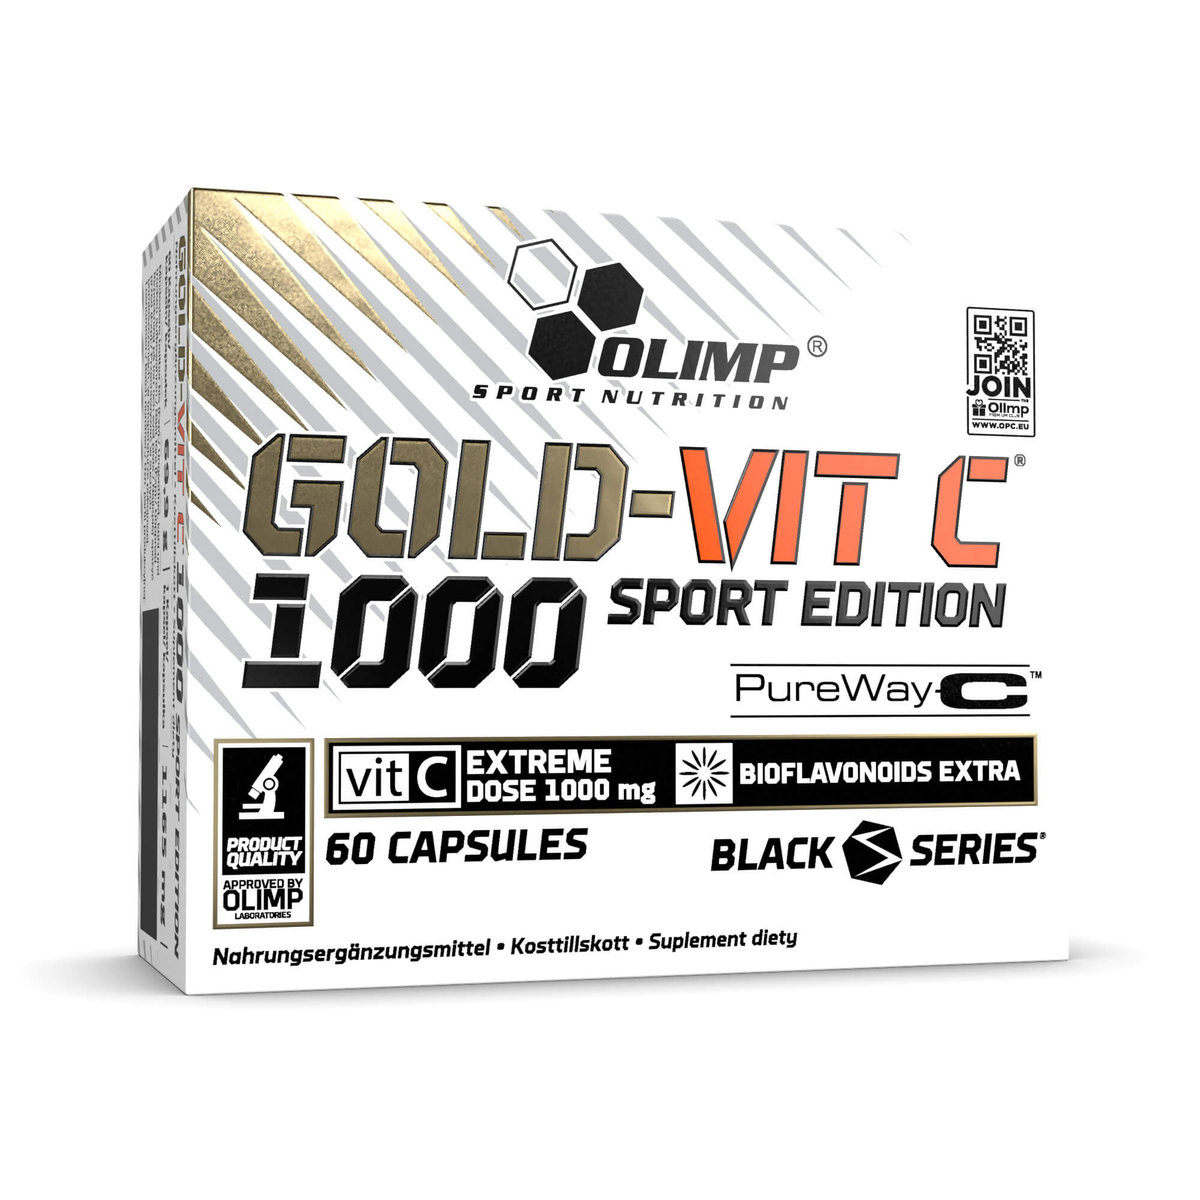 Olimp Gold-Vit C 1000 Sport Edition 60caps